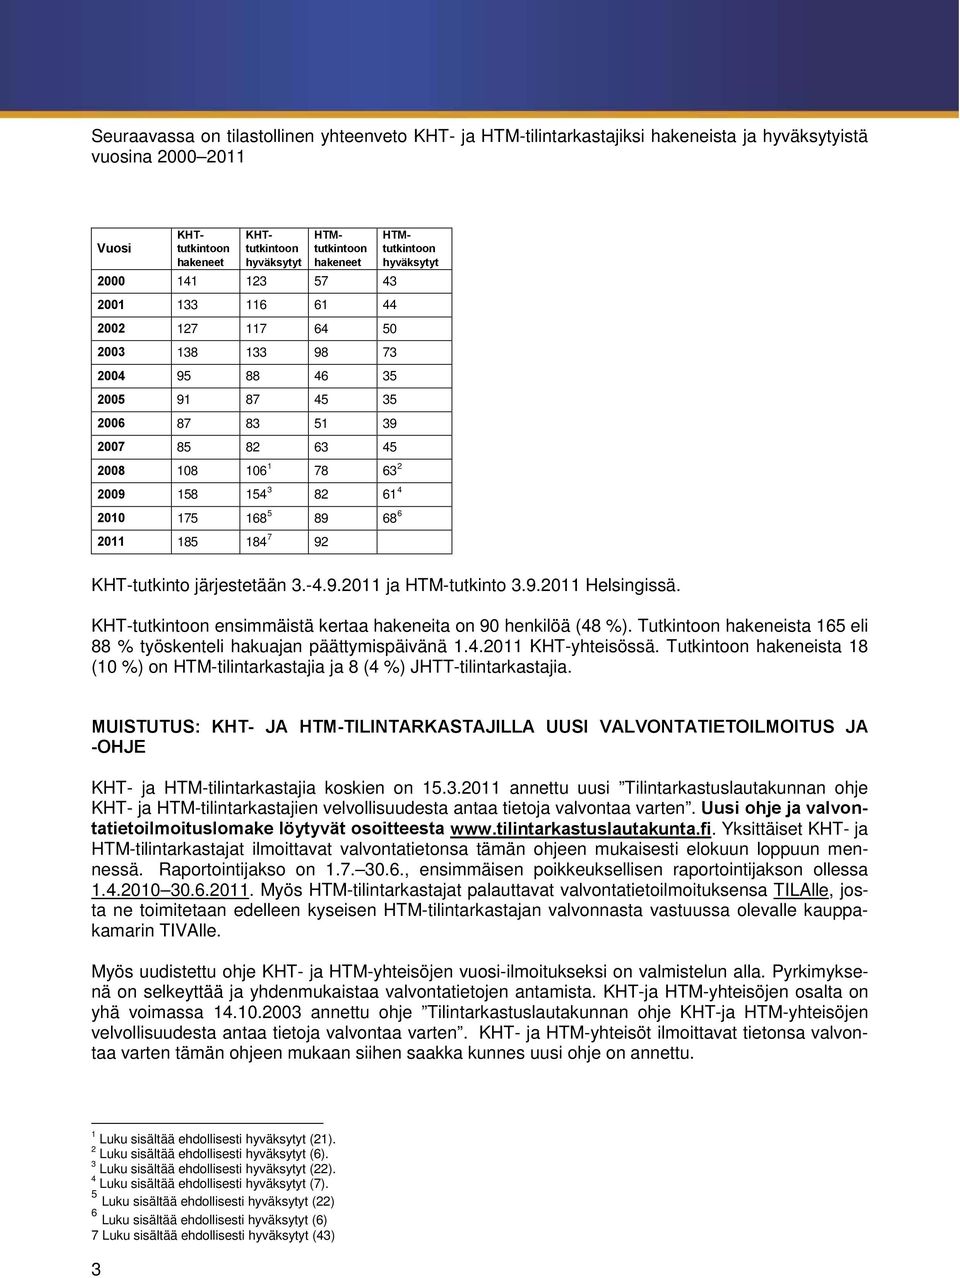 89 68 6 2011 185 184 7 92 HTMtutkintoon hyväksytyt KHT-tutkinto järjestetään 3.-4.9.2011 ja HTM-tutkinto 3.9.2011 Helsingissä. KHT-tutkintoon ensimmäistä kertaa hakeneita on 90 henkilöä (48 %).